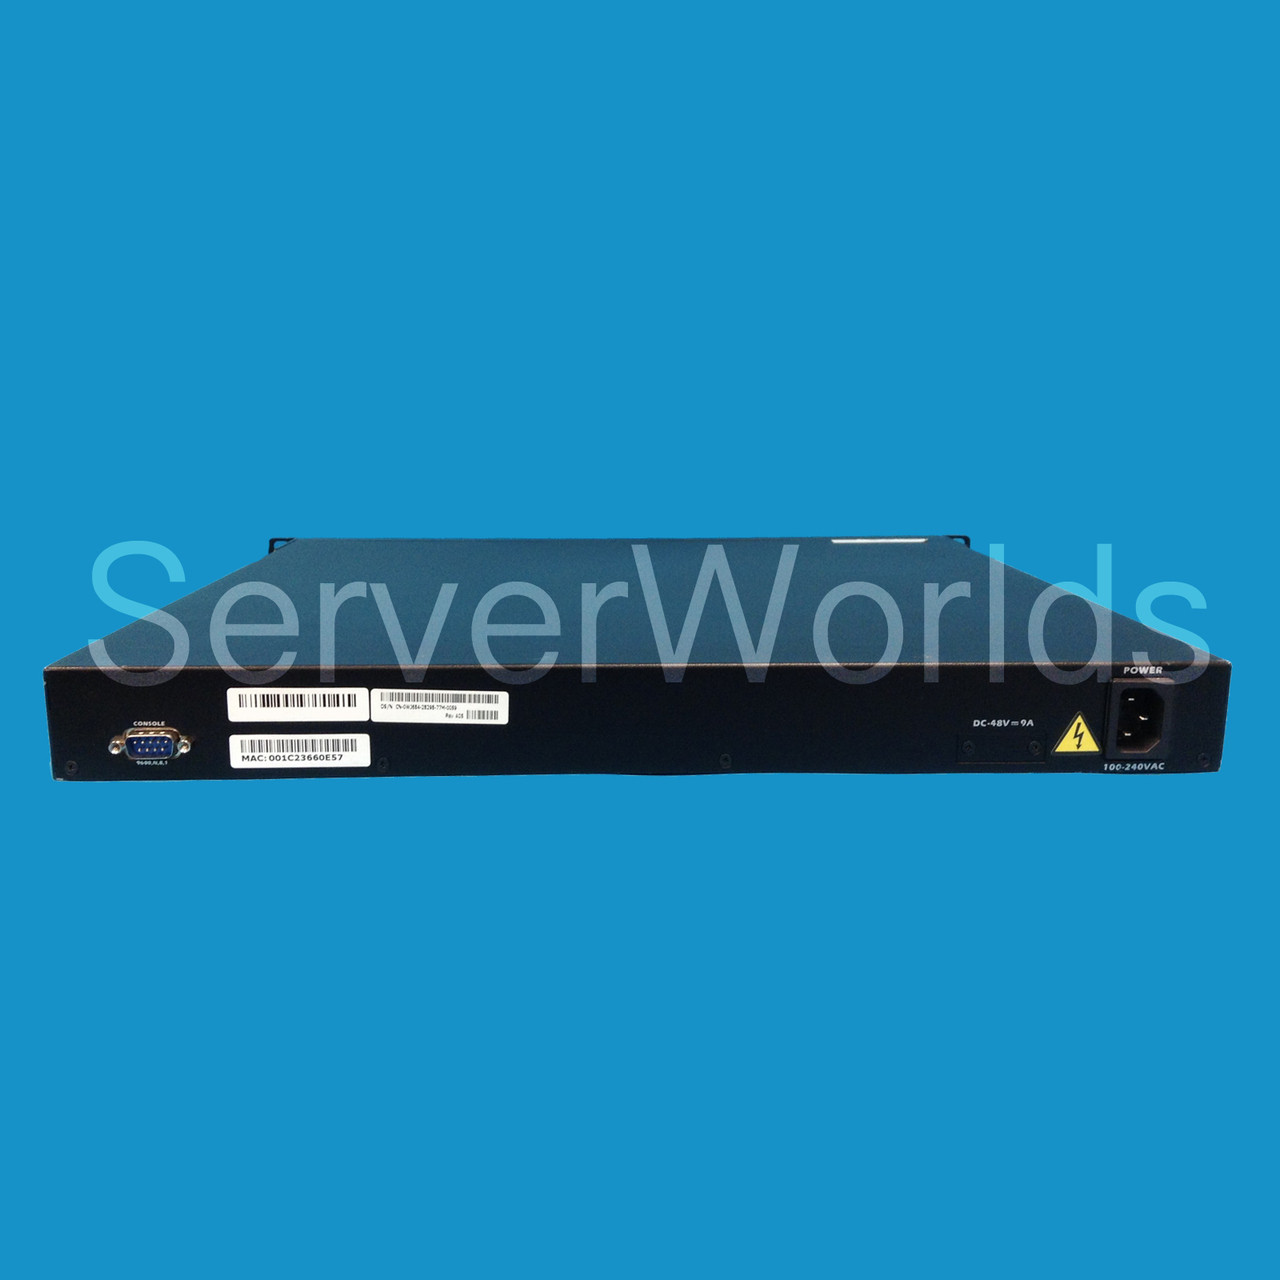 Dell Powerconnect 3424P 24 Port Gigabit Switch w/Ears WJ684